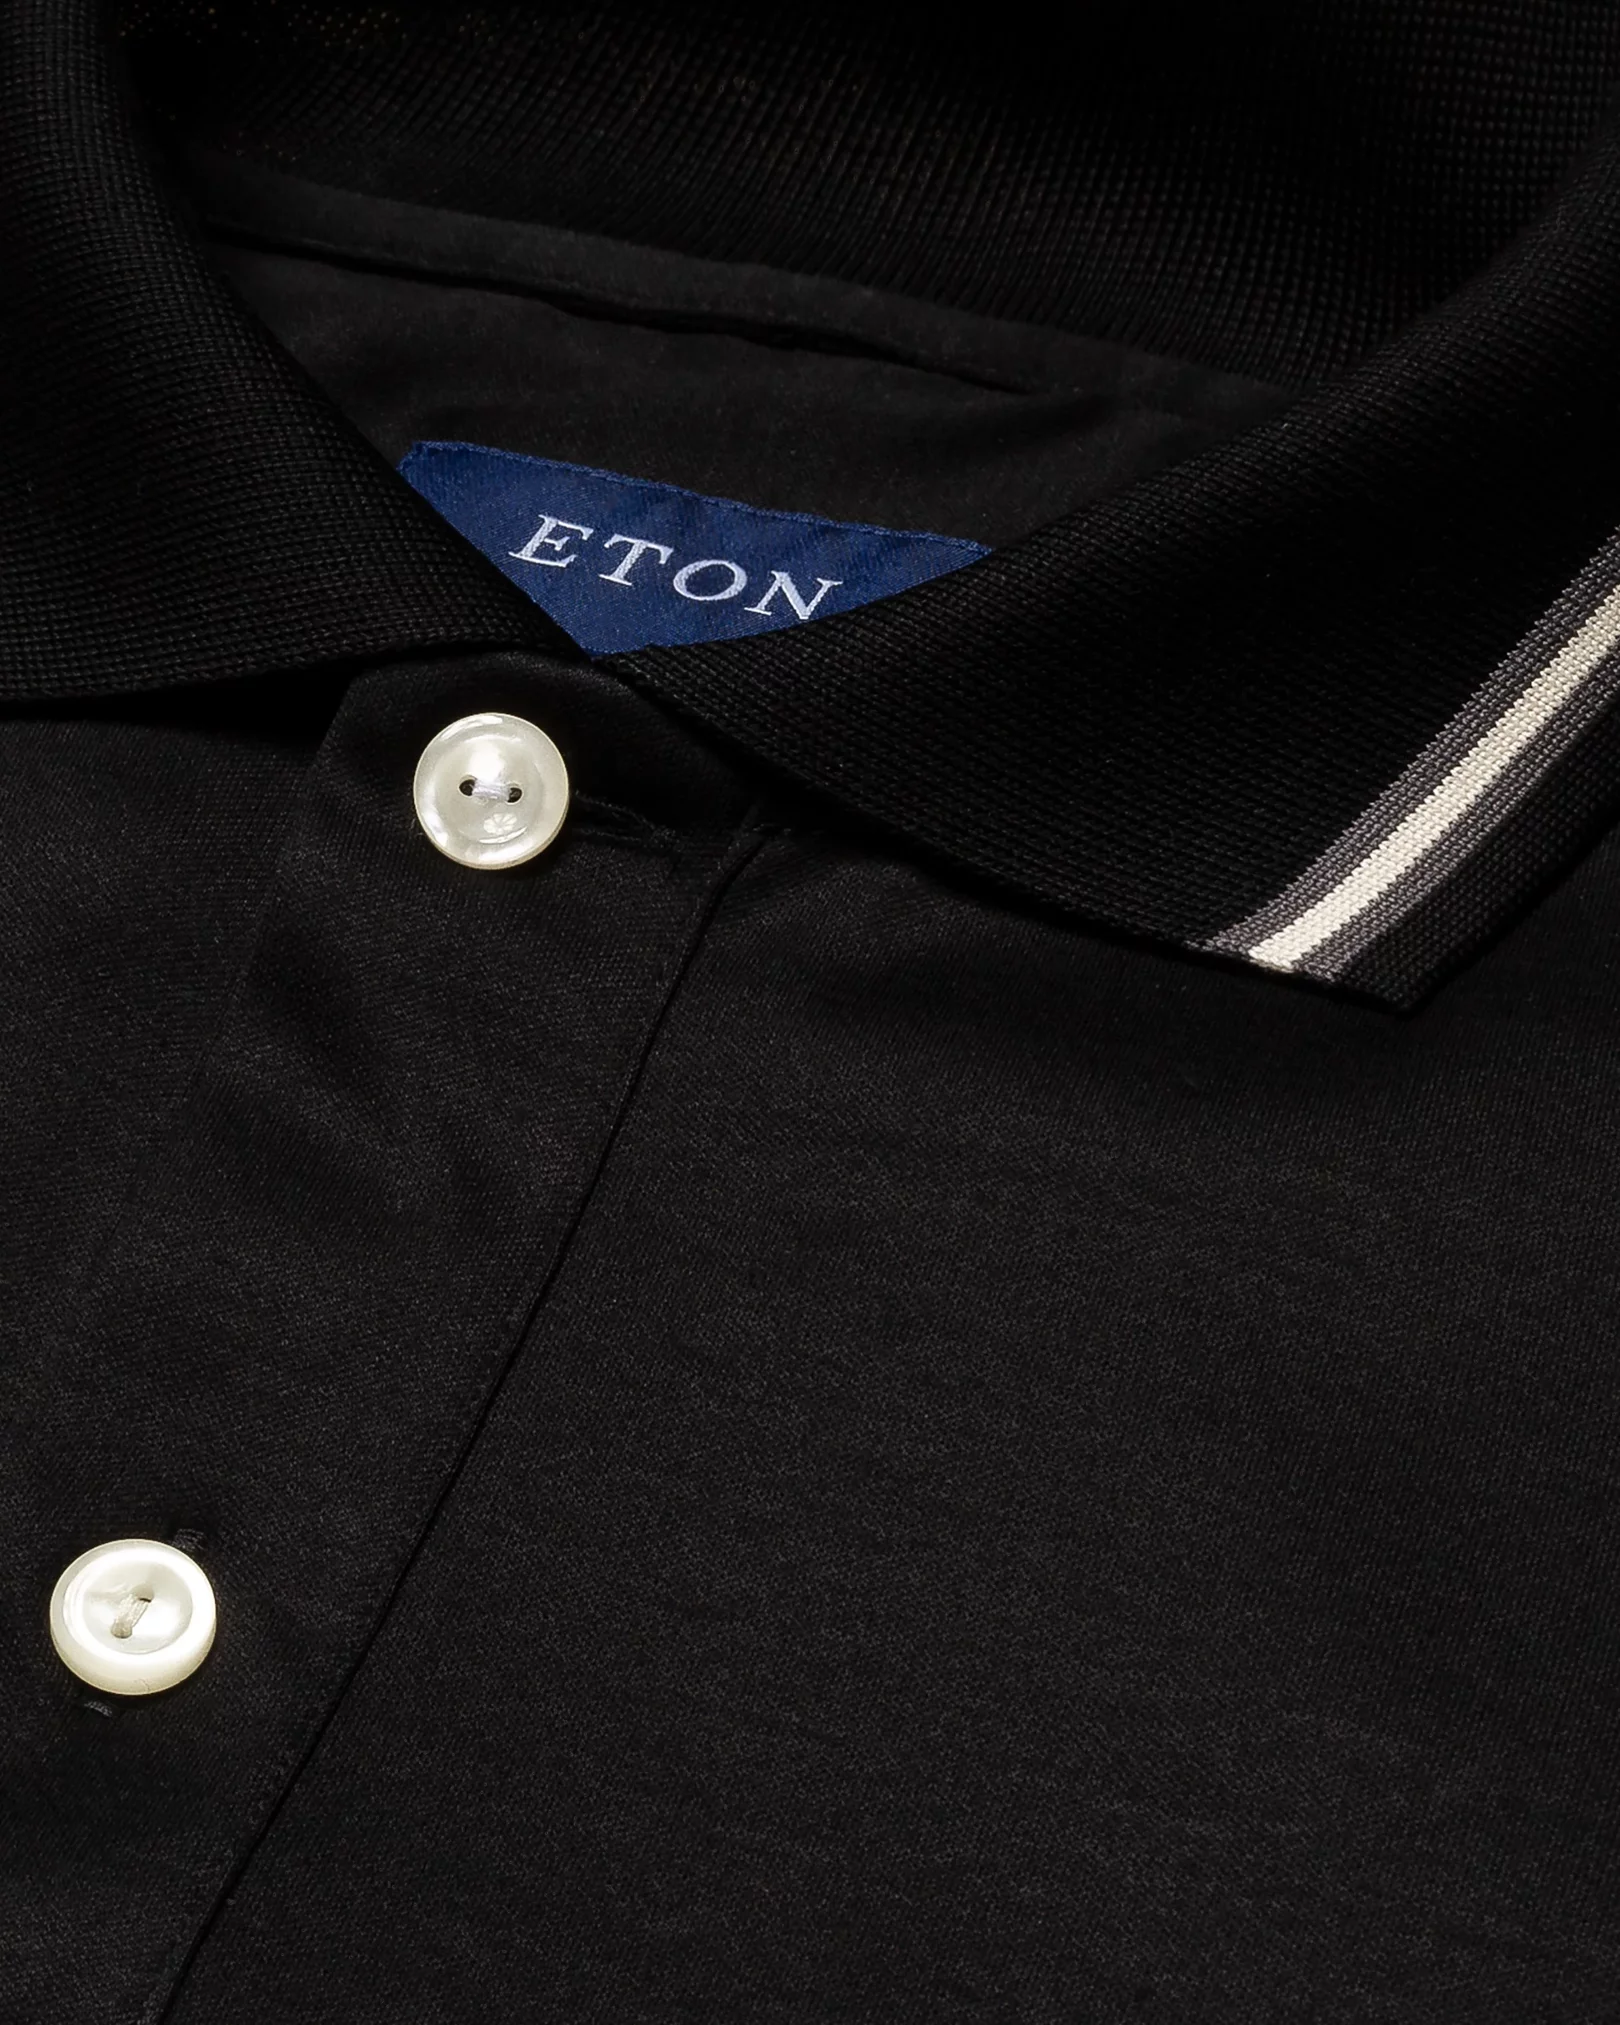 Eton - black jersey knittedcollar